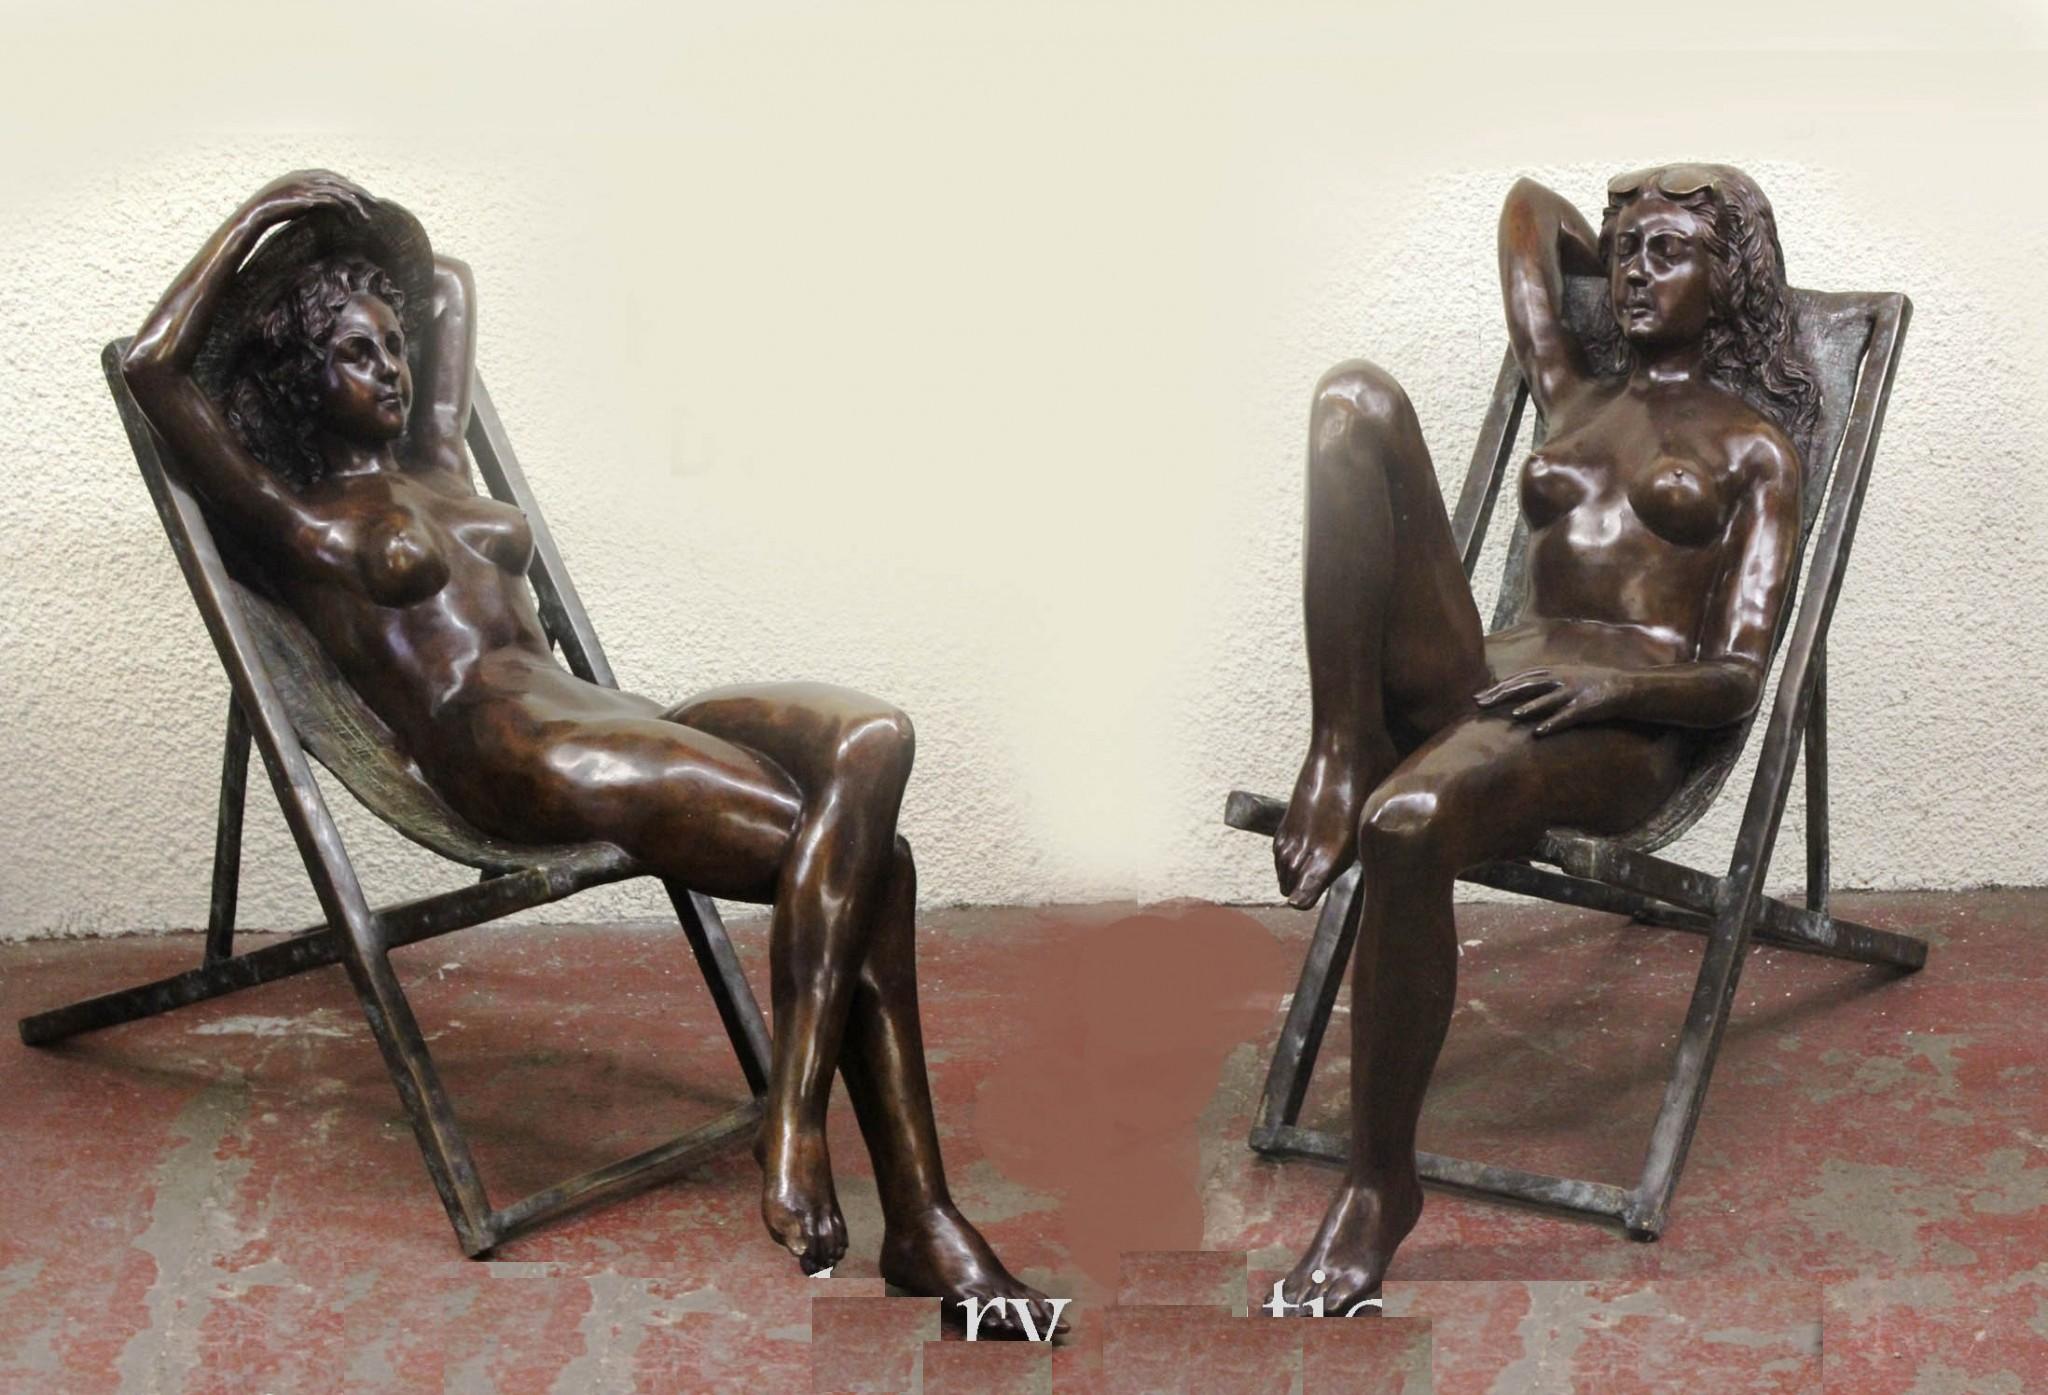 Superbe paire de femmes nues en bronze, grandeur nature, allongées sur des chaises longues
Ils sont parfaits pour le jardin et, comme ils sont en bronze, ils peuvent vivre à l'extérieur sans craindre de rouiller.
Paire excentrique avec une belle